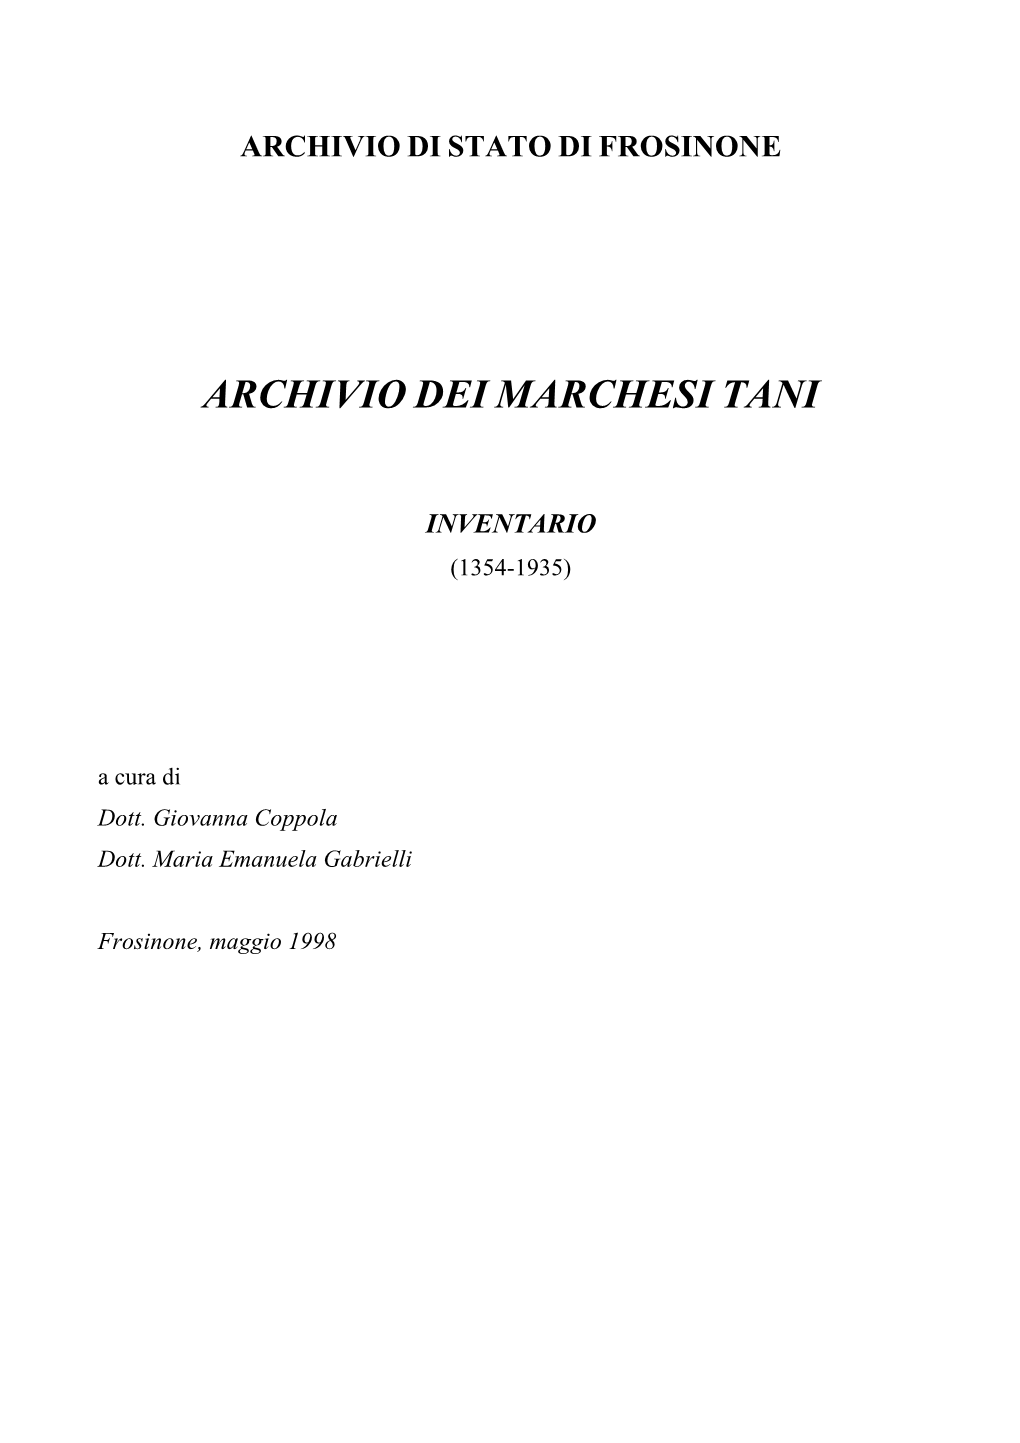 Archivio Dei Marchesi Tani